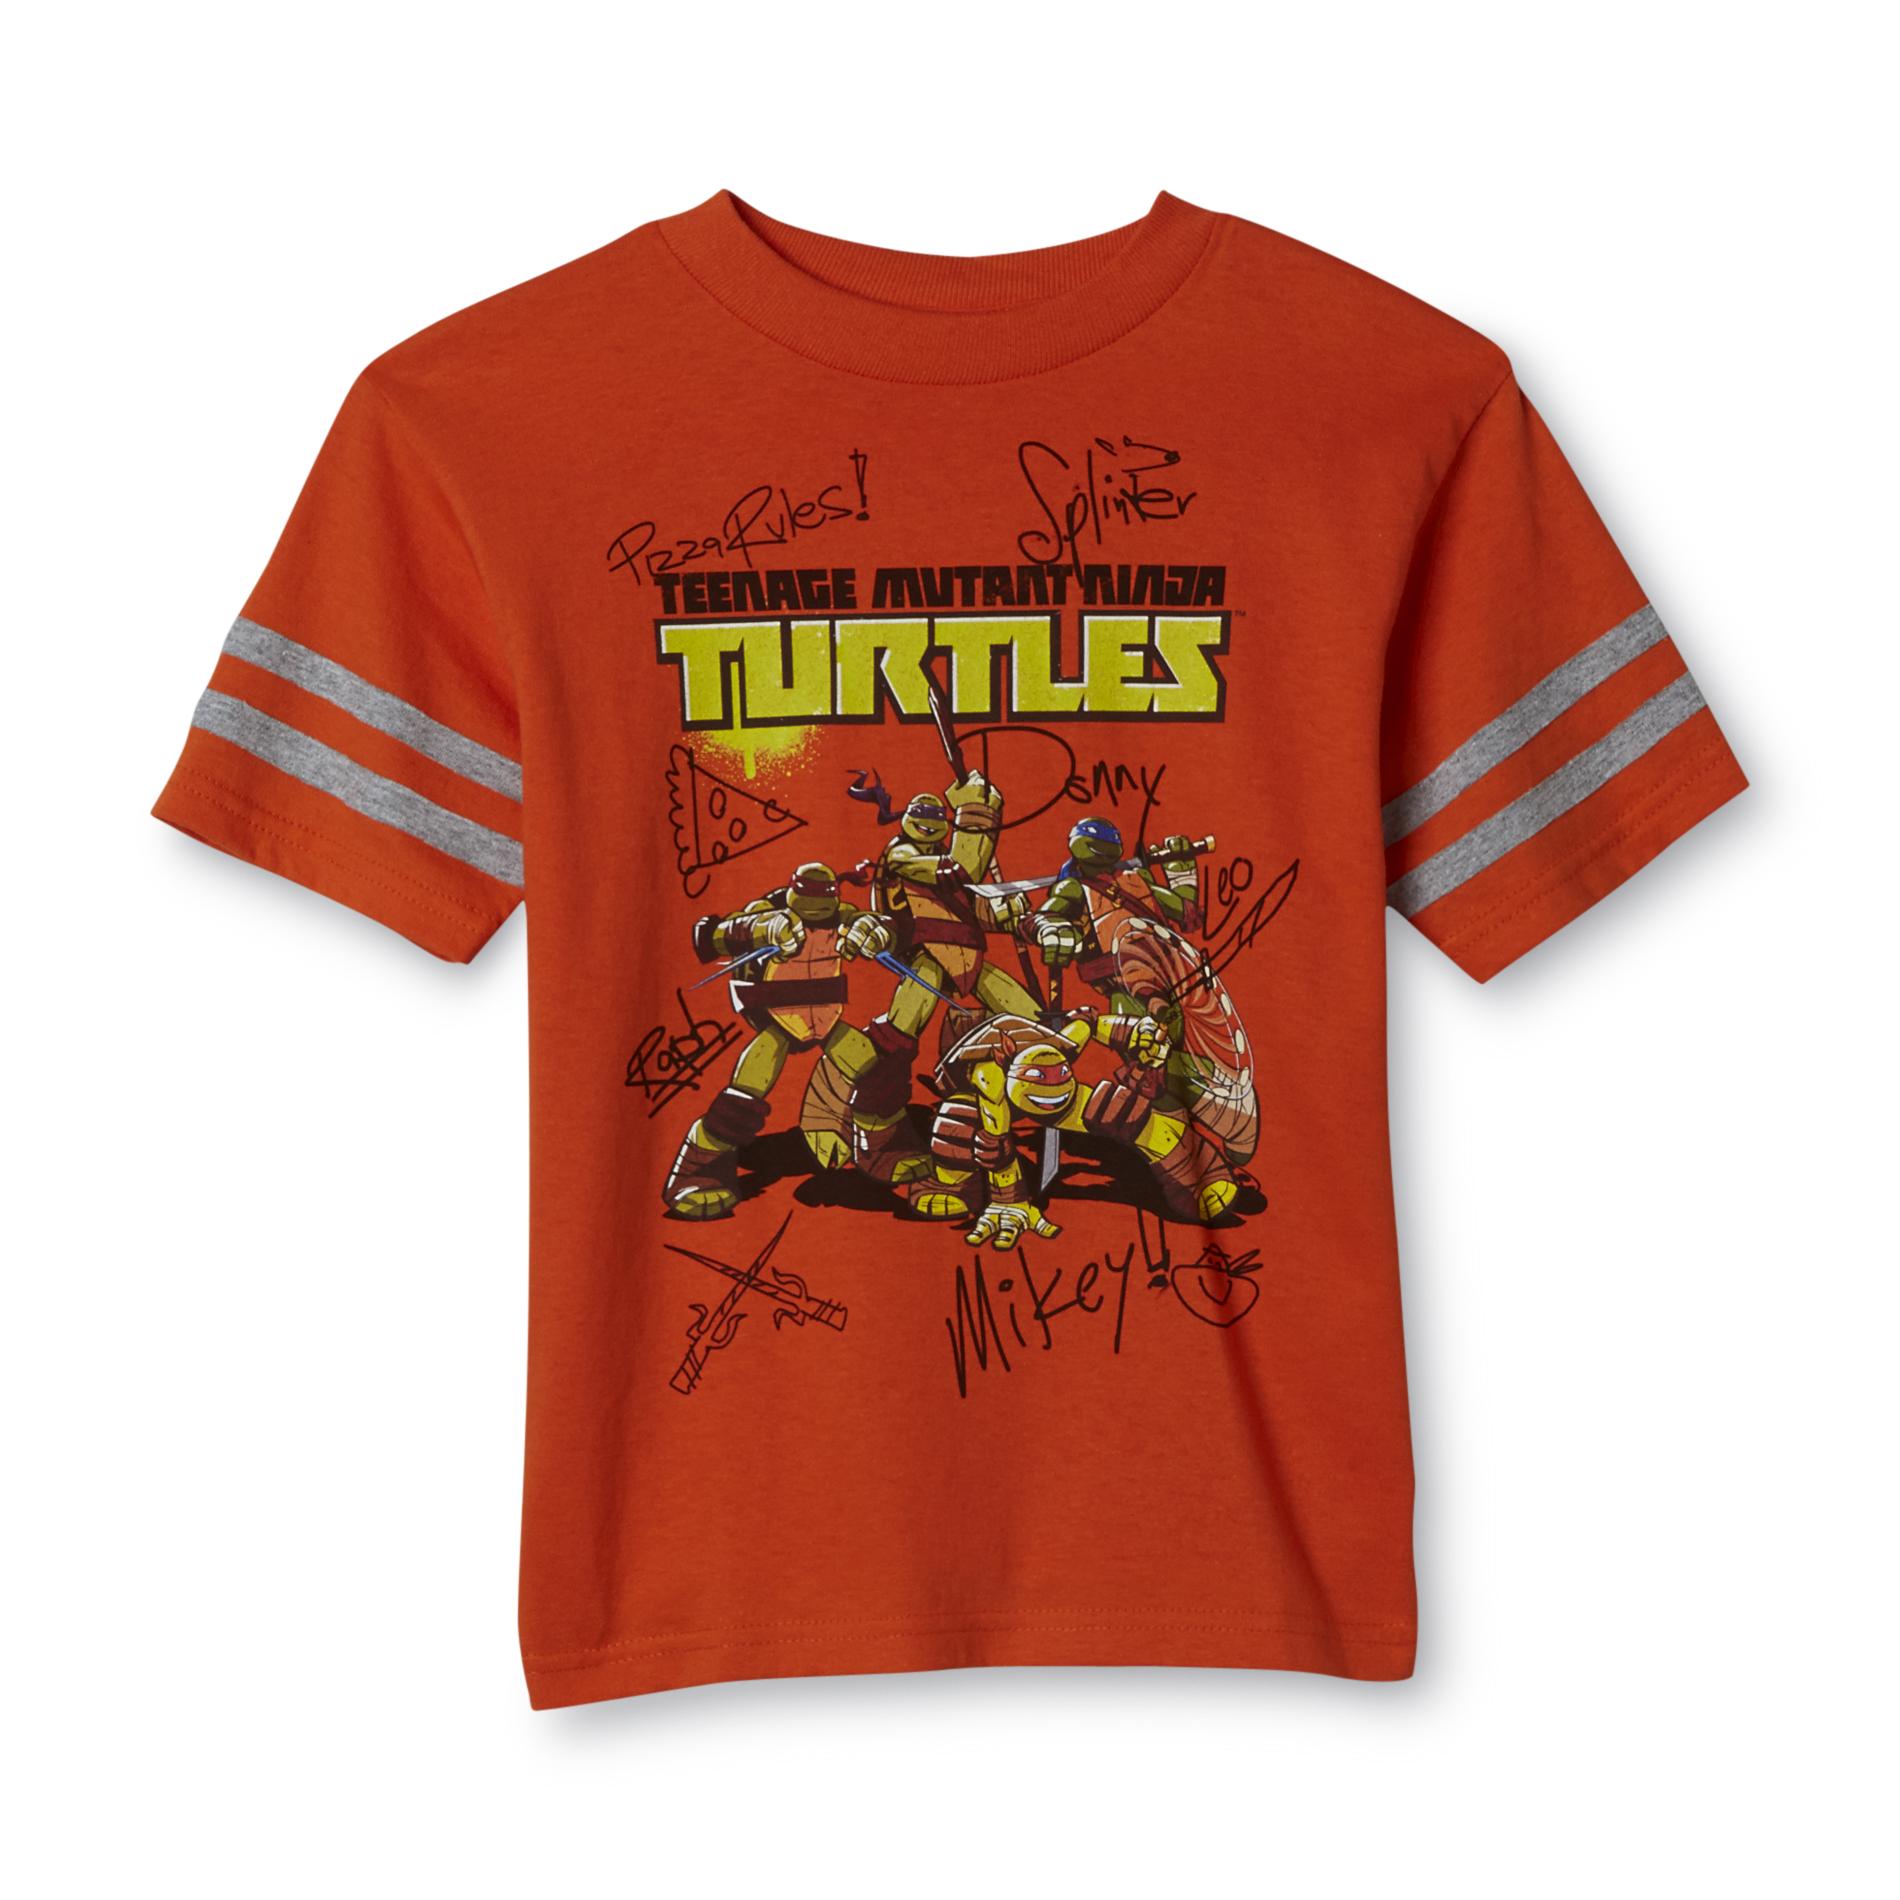 Nickelodeon Boy's Graphic T-Shirt - TMNT